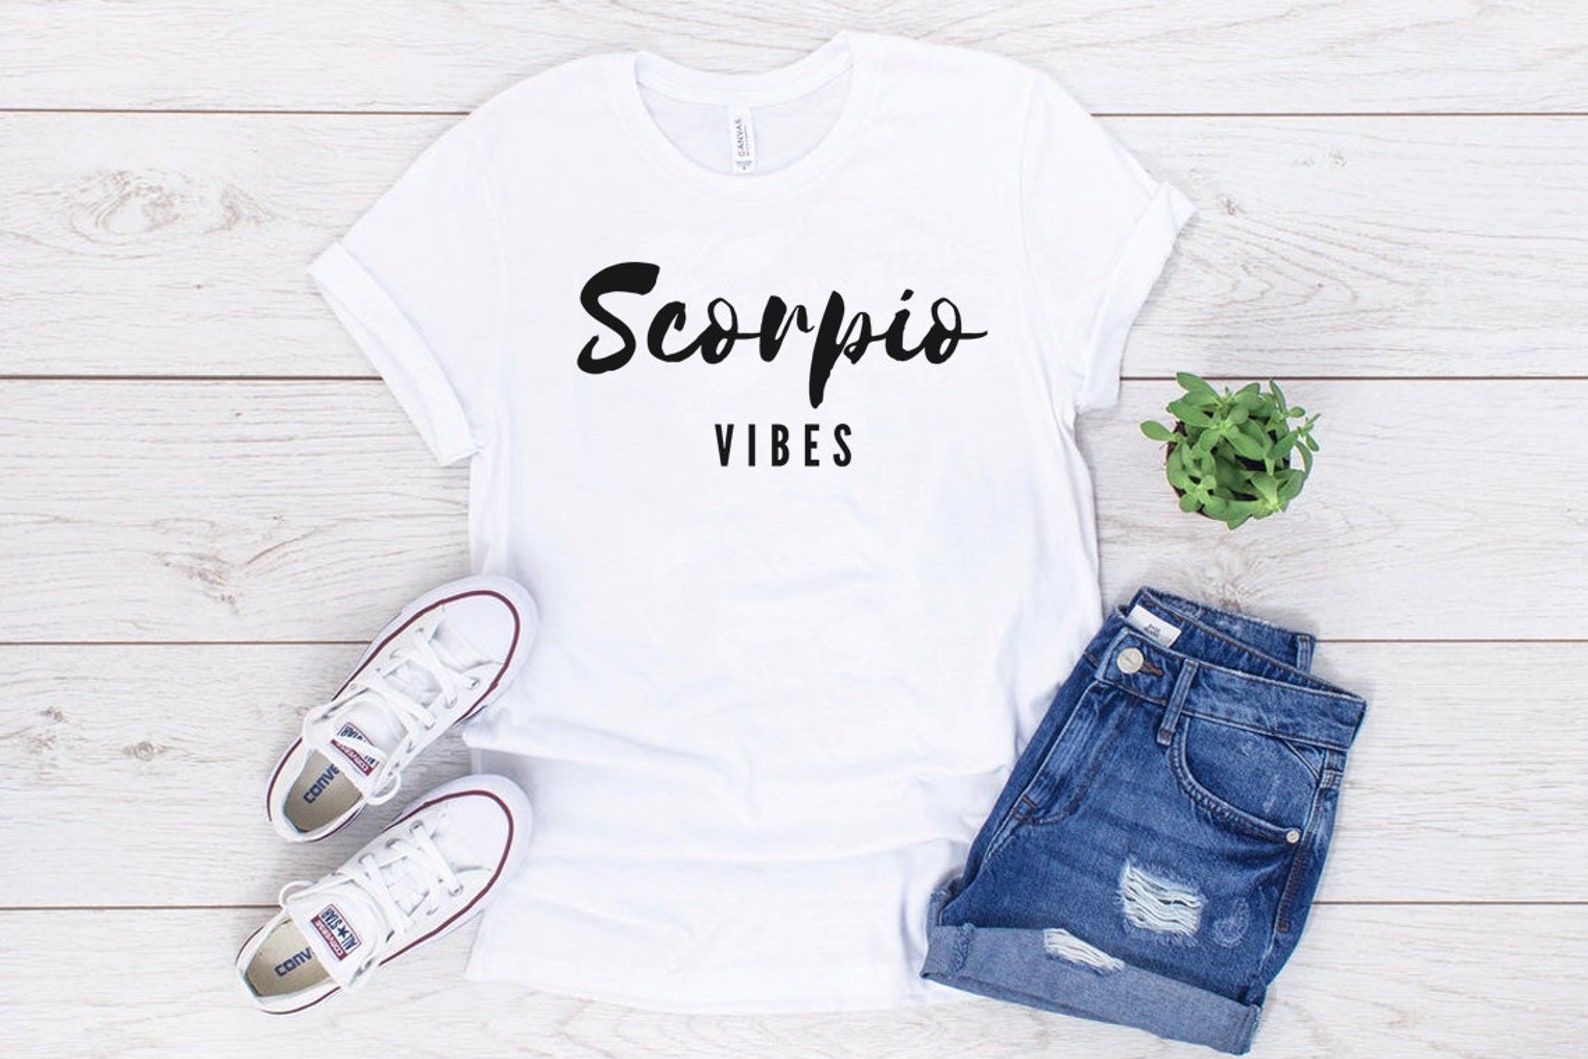 Scorpio Vibes Tshirt Cute Tees Star Sign Shirt - Etsy